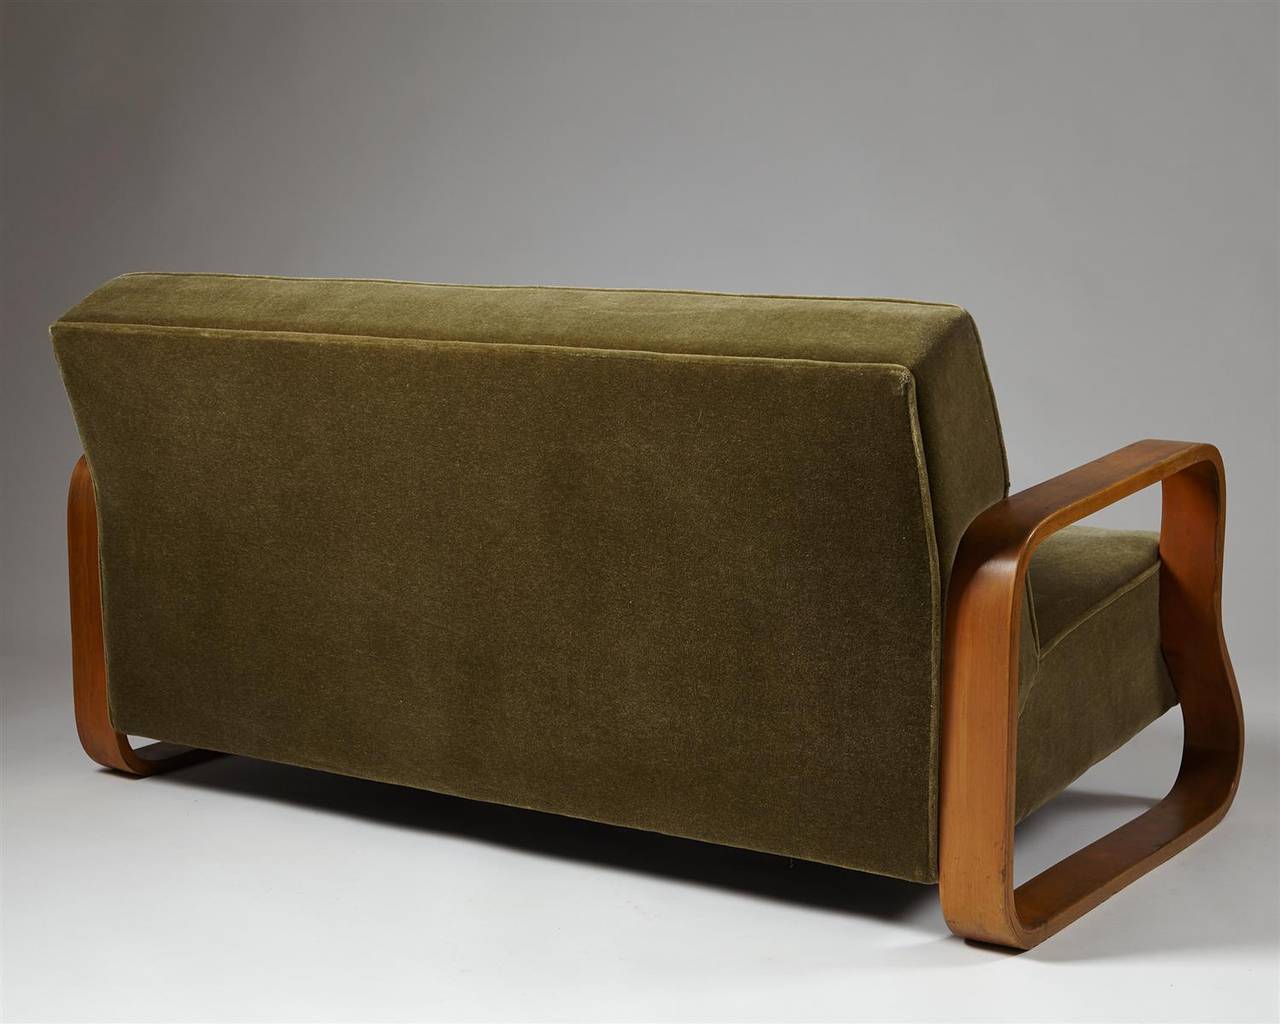 Scandinavian Modern Sofa, Model 544, Designed by Alvar Aalto for Artek, Finland, 1932